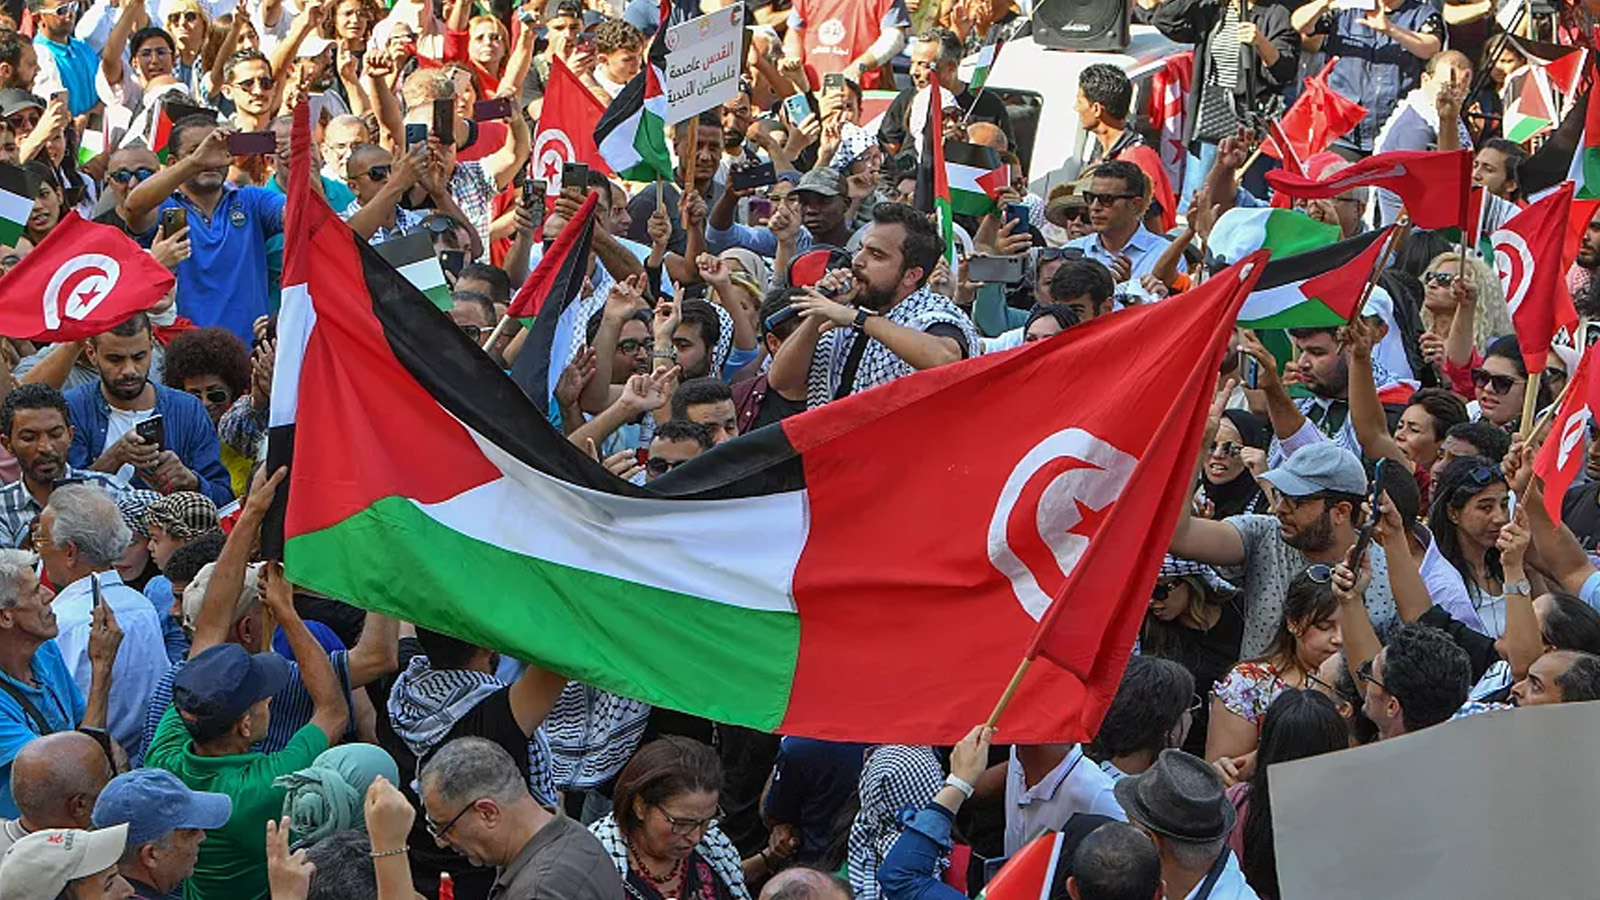 متظاهرون يرفعون الأعلام الفلسطينية والتونسية ويرددون شعارات خلال مظاهرة مناهضة لإسرائيل في تونس